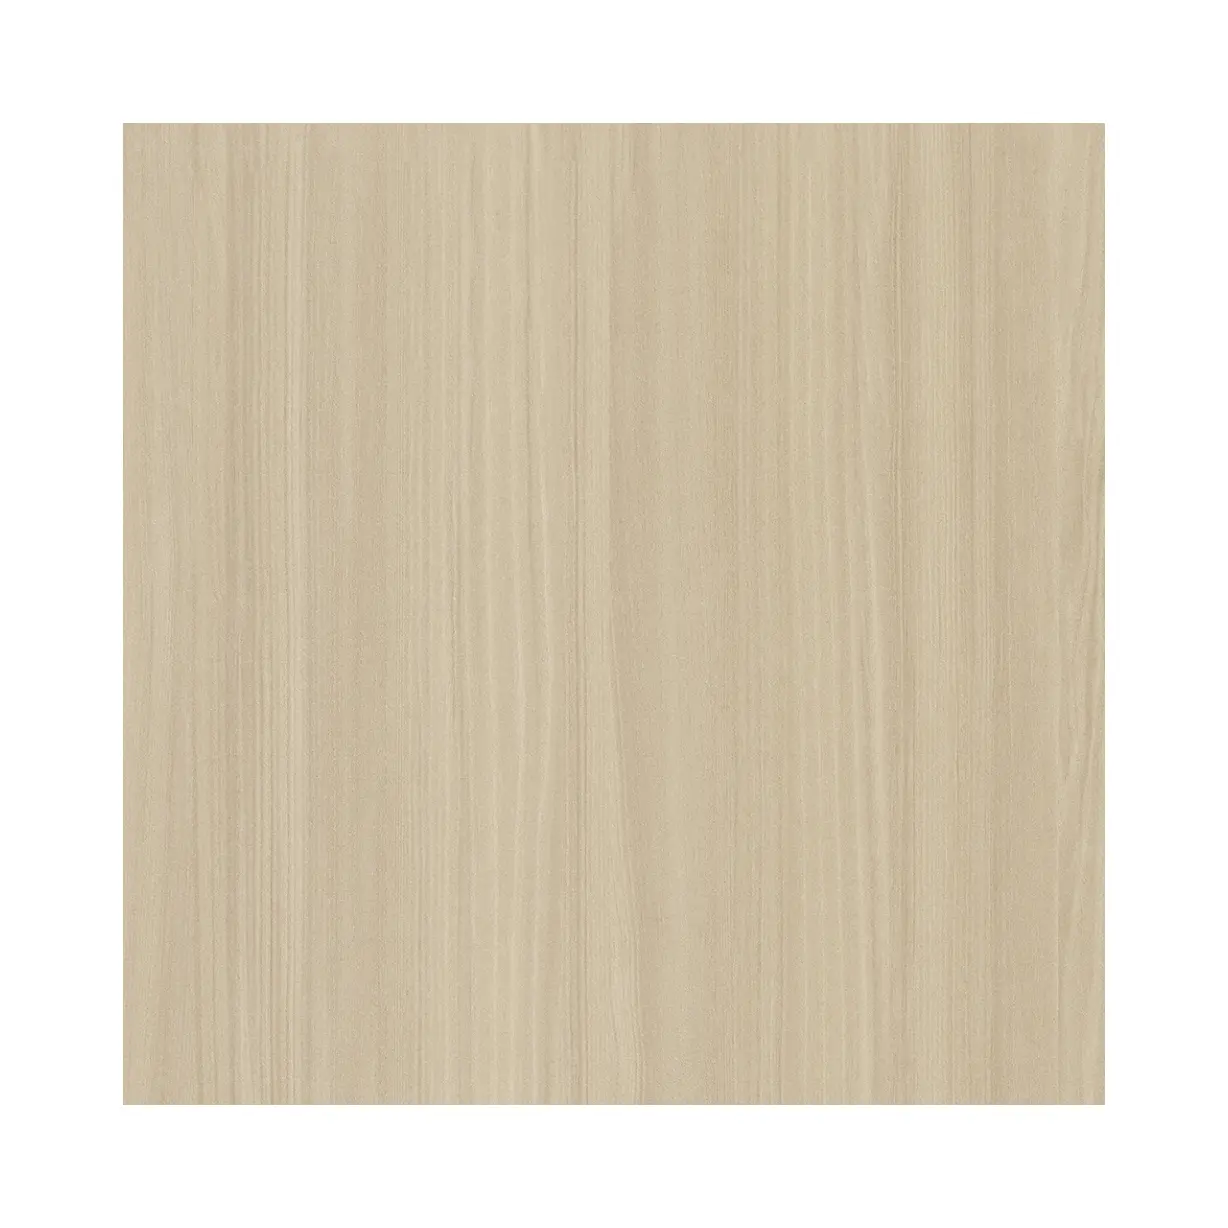 2023 le nouveau film décoratif en PVC à grain de bois mat est un film de revêtement en PVC non auto-adhésif utilisé pour la décoration de meubles.